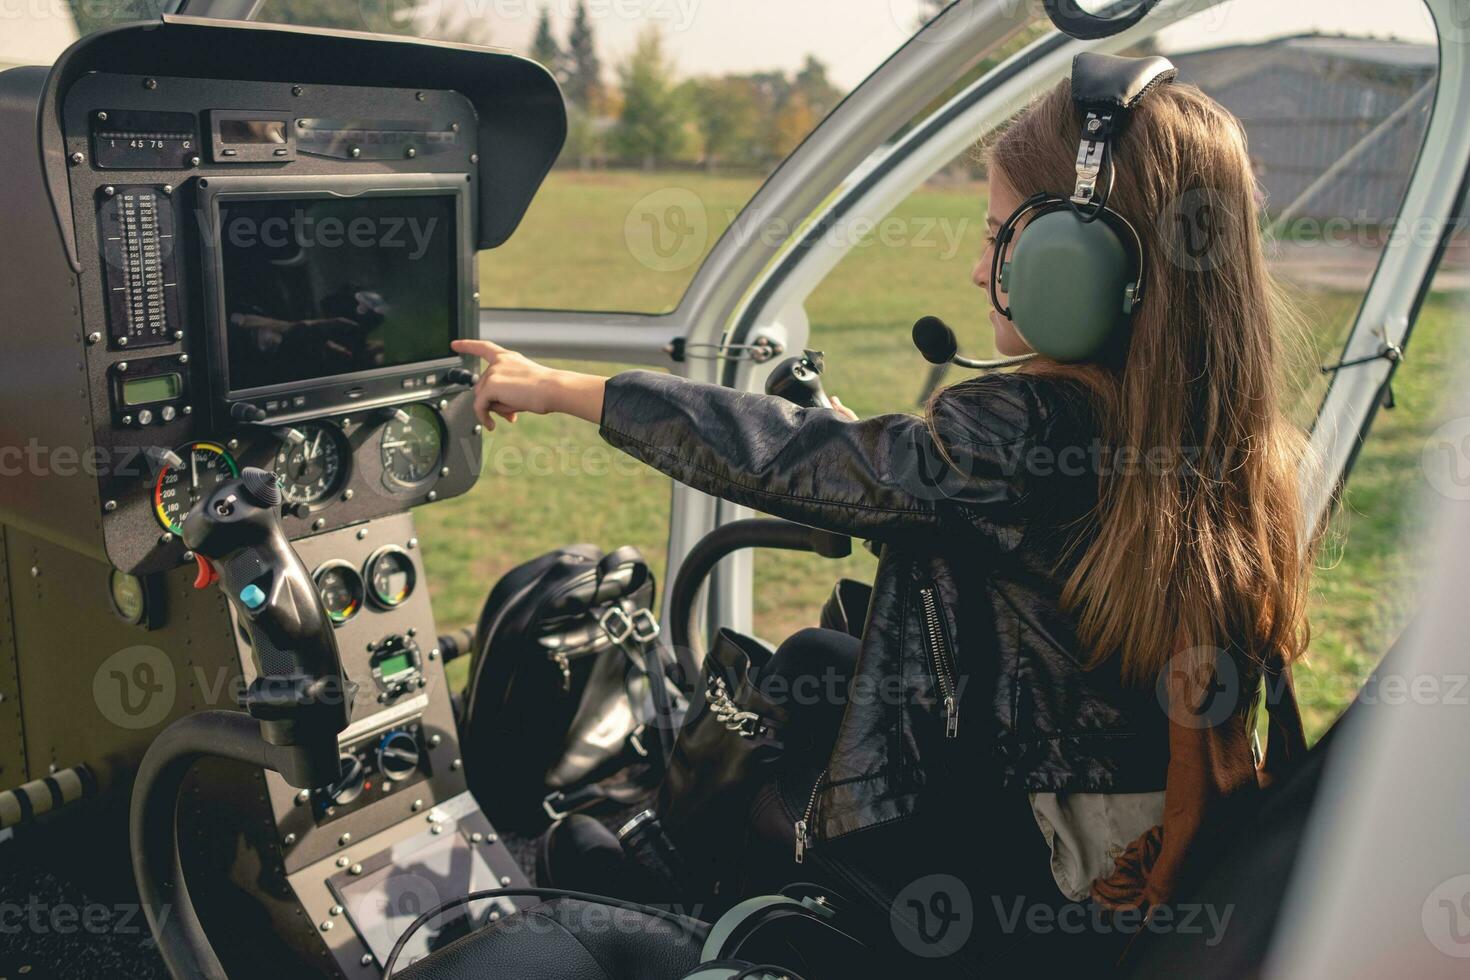 preteen flicka i headsetet pekande på instrumentbräda i helikopter cockpit foto